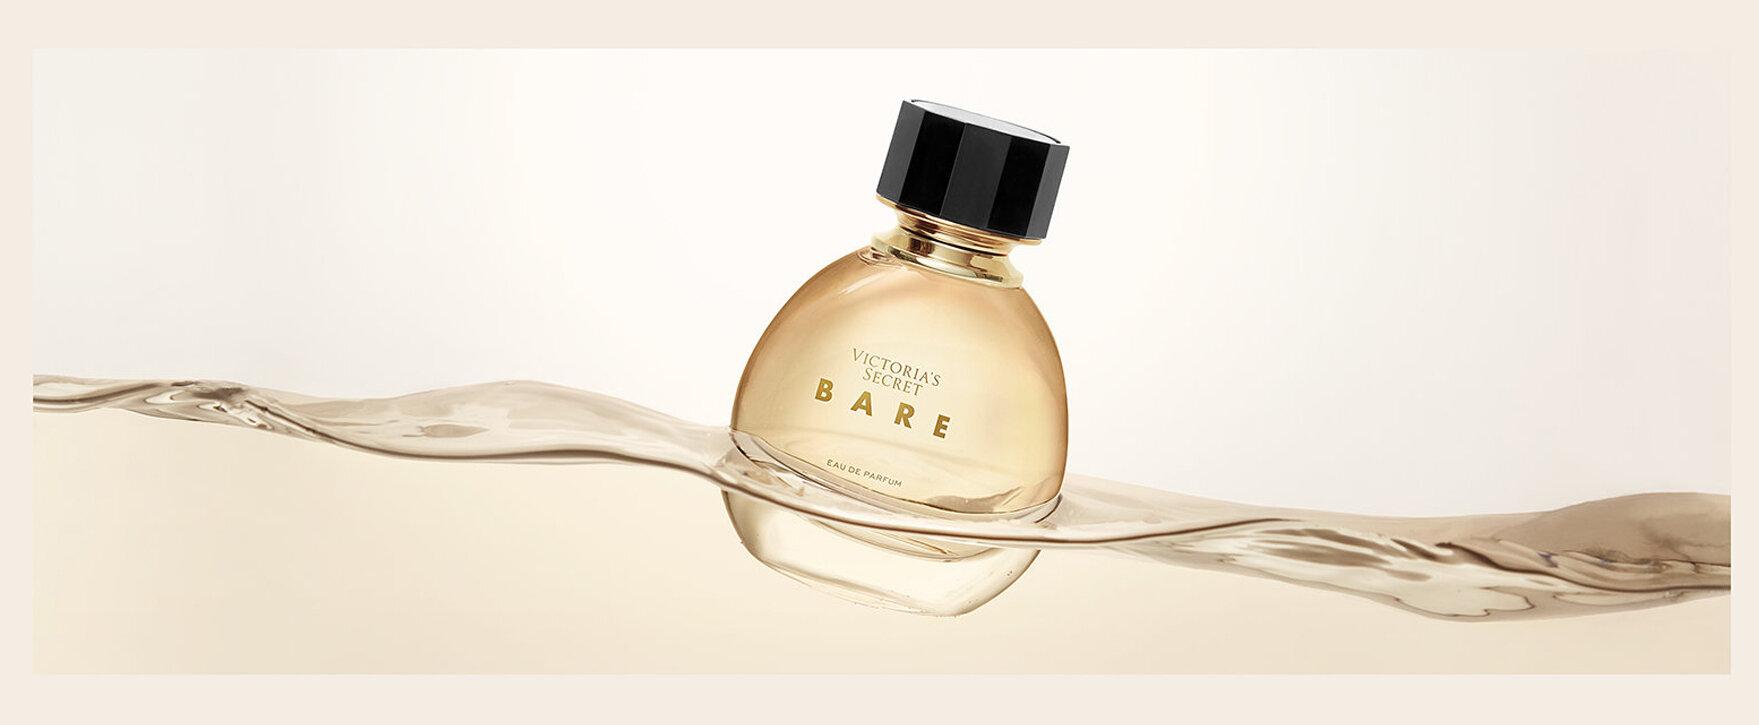 Victoria's Secret bringt mit „Bare“ das bisher persönlichste Parfum